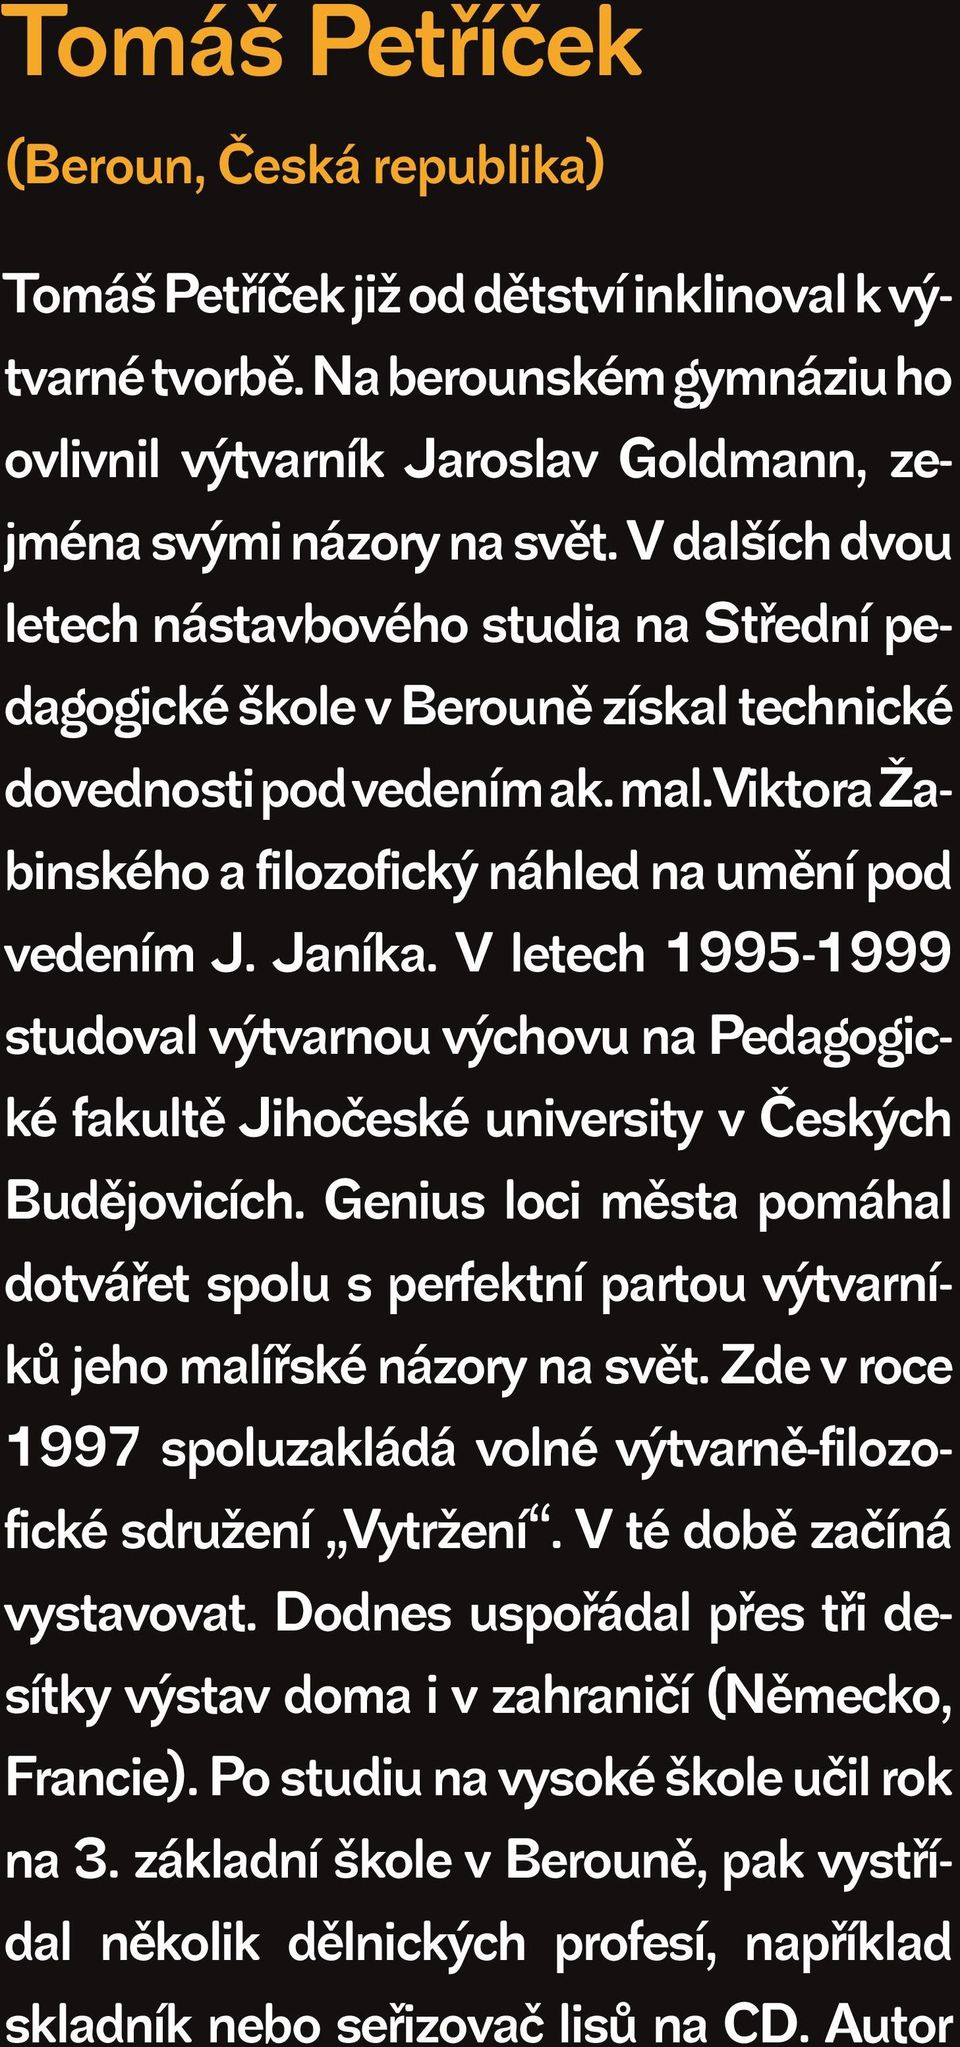 V letech 1995-1999 studoval výtvarnou výchovu na Pedagogické fakultě Jihočeské university v Českých Budějovicích.